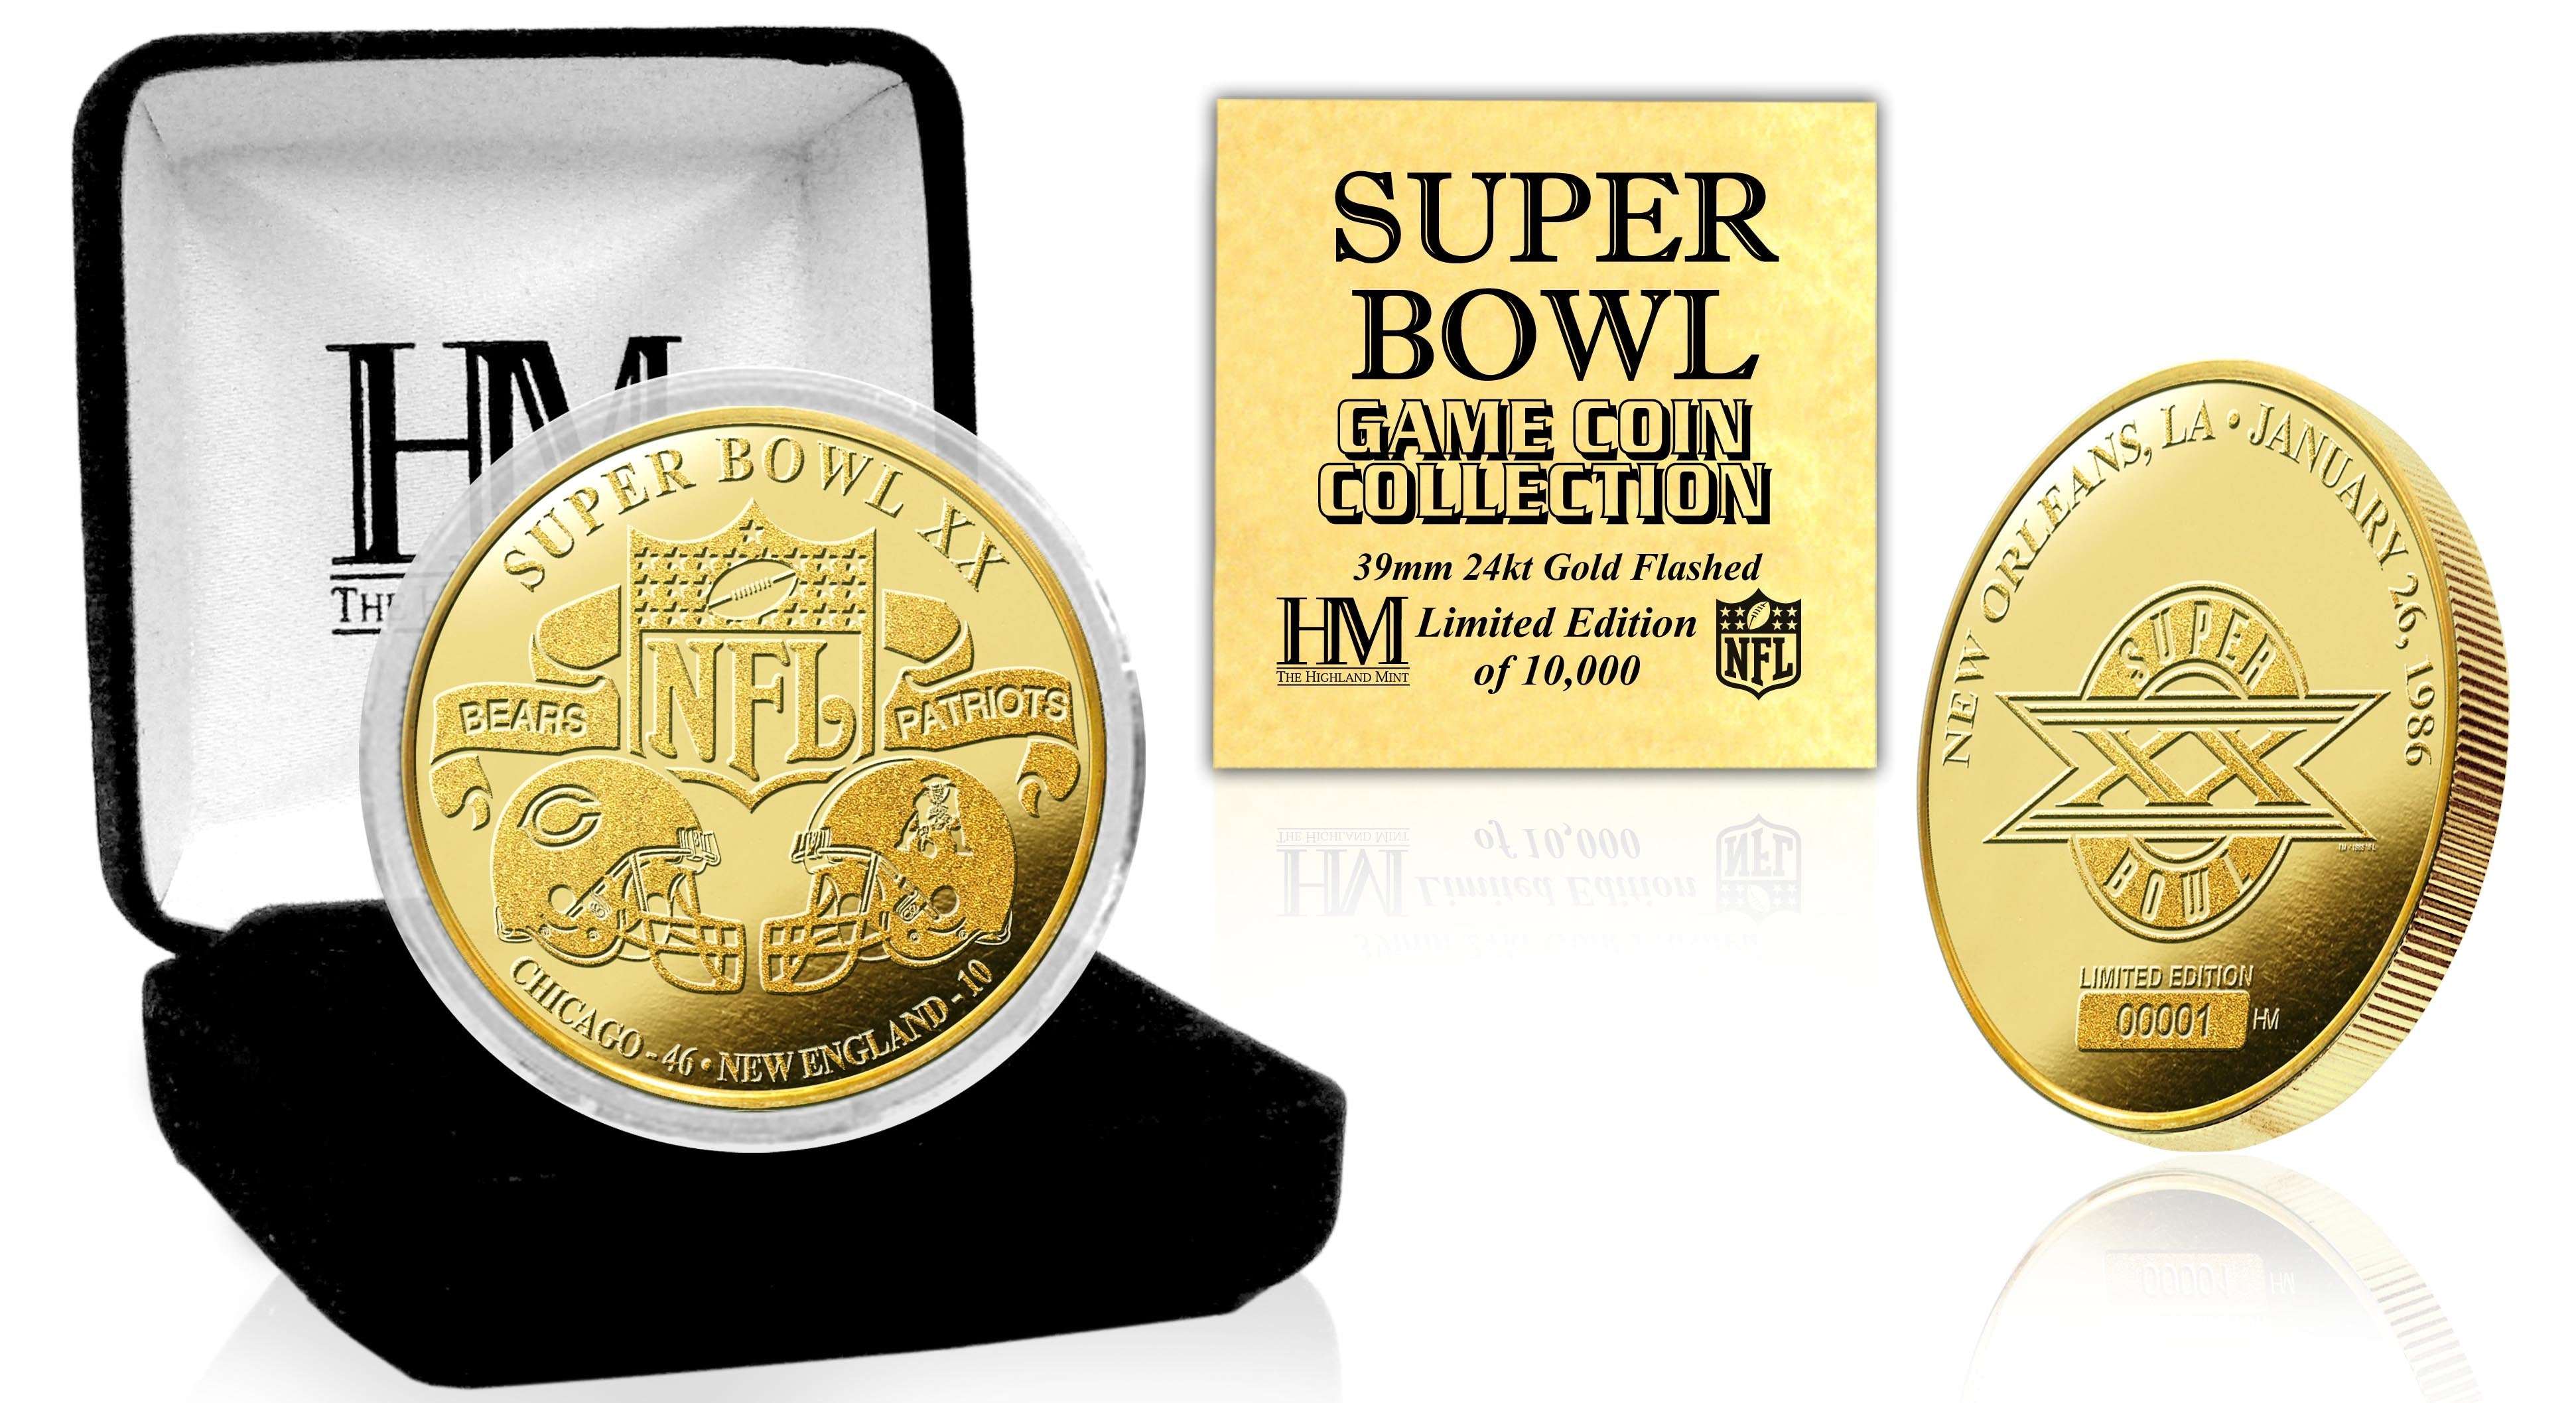 Super Bowl XX 24kt Gold Flip Coin